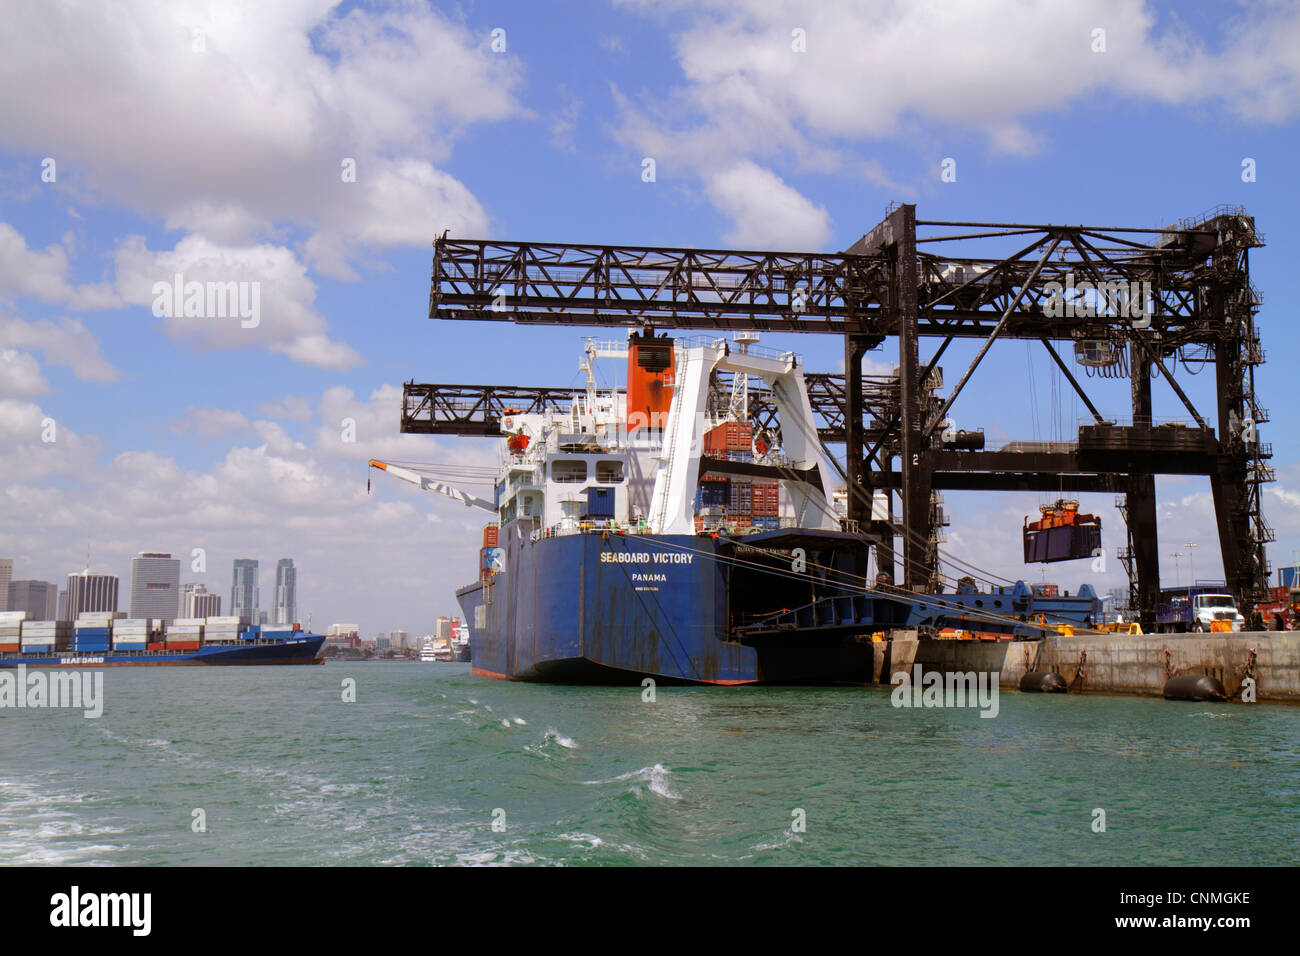 Miami Florida, Biscayne Bay, Porto di Miami, Dodge Island, nave container cargo, gru, mare, barca, skyline della città, FL120331186 Foto Stock